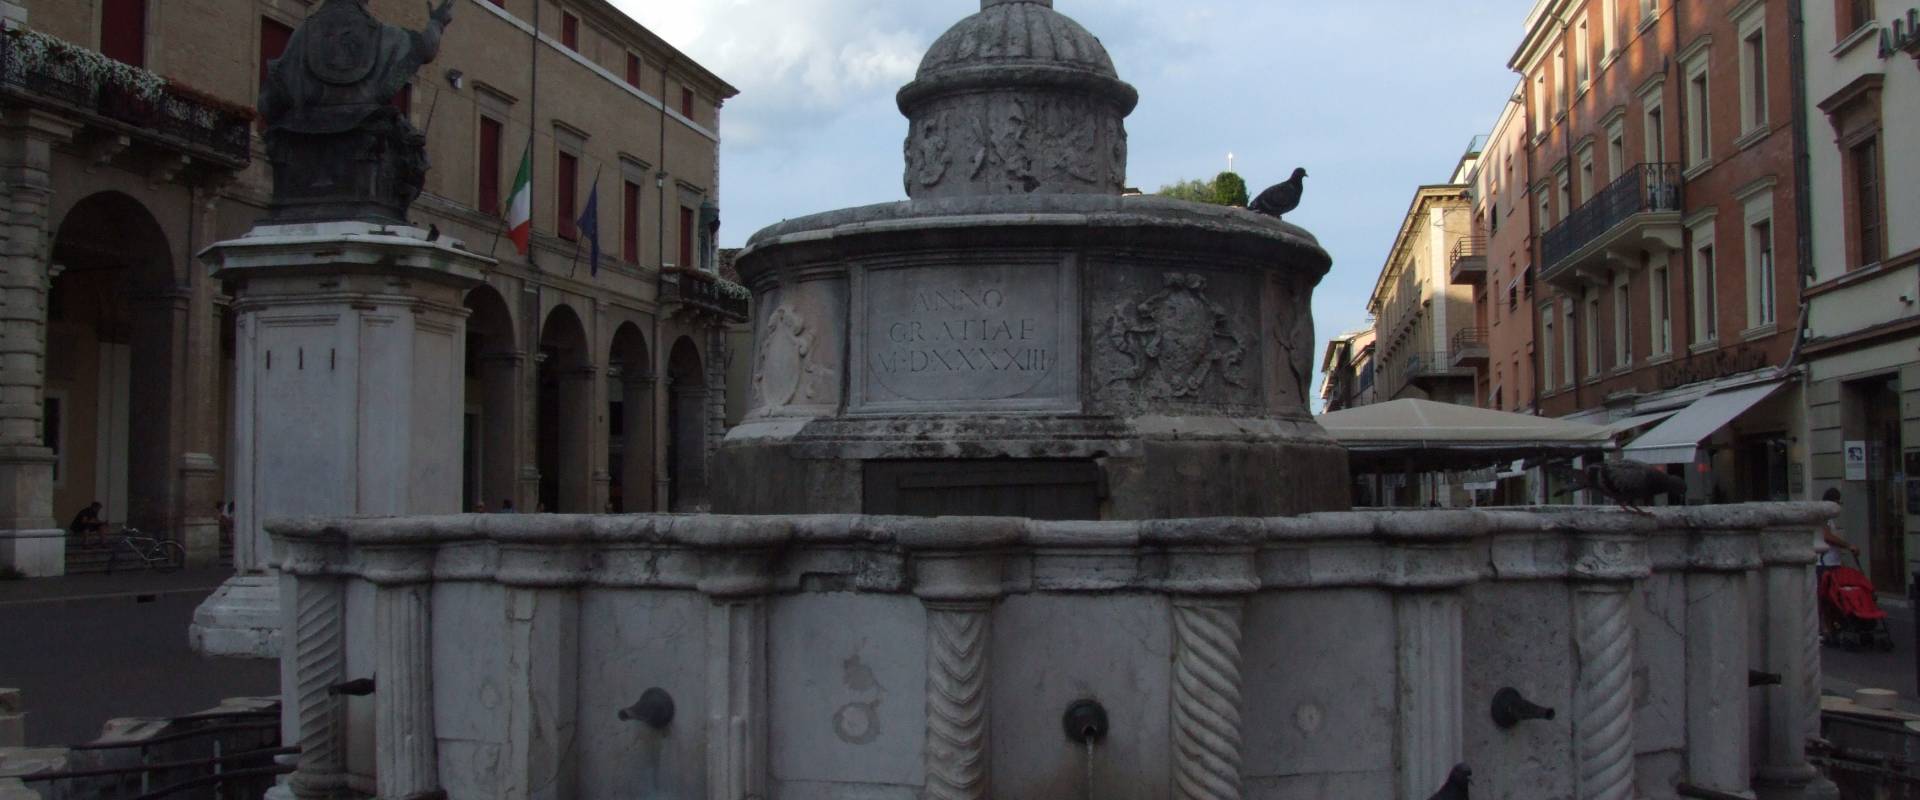 Fontana della Pigna - Rimini foto di Diego Baglieri